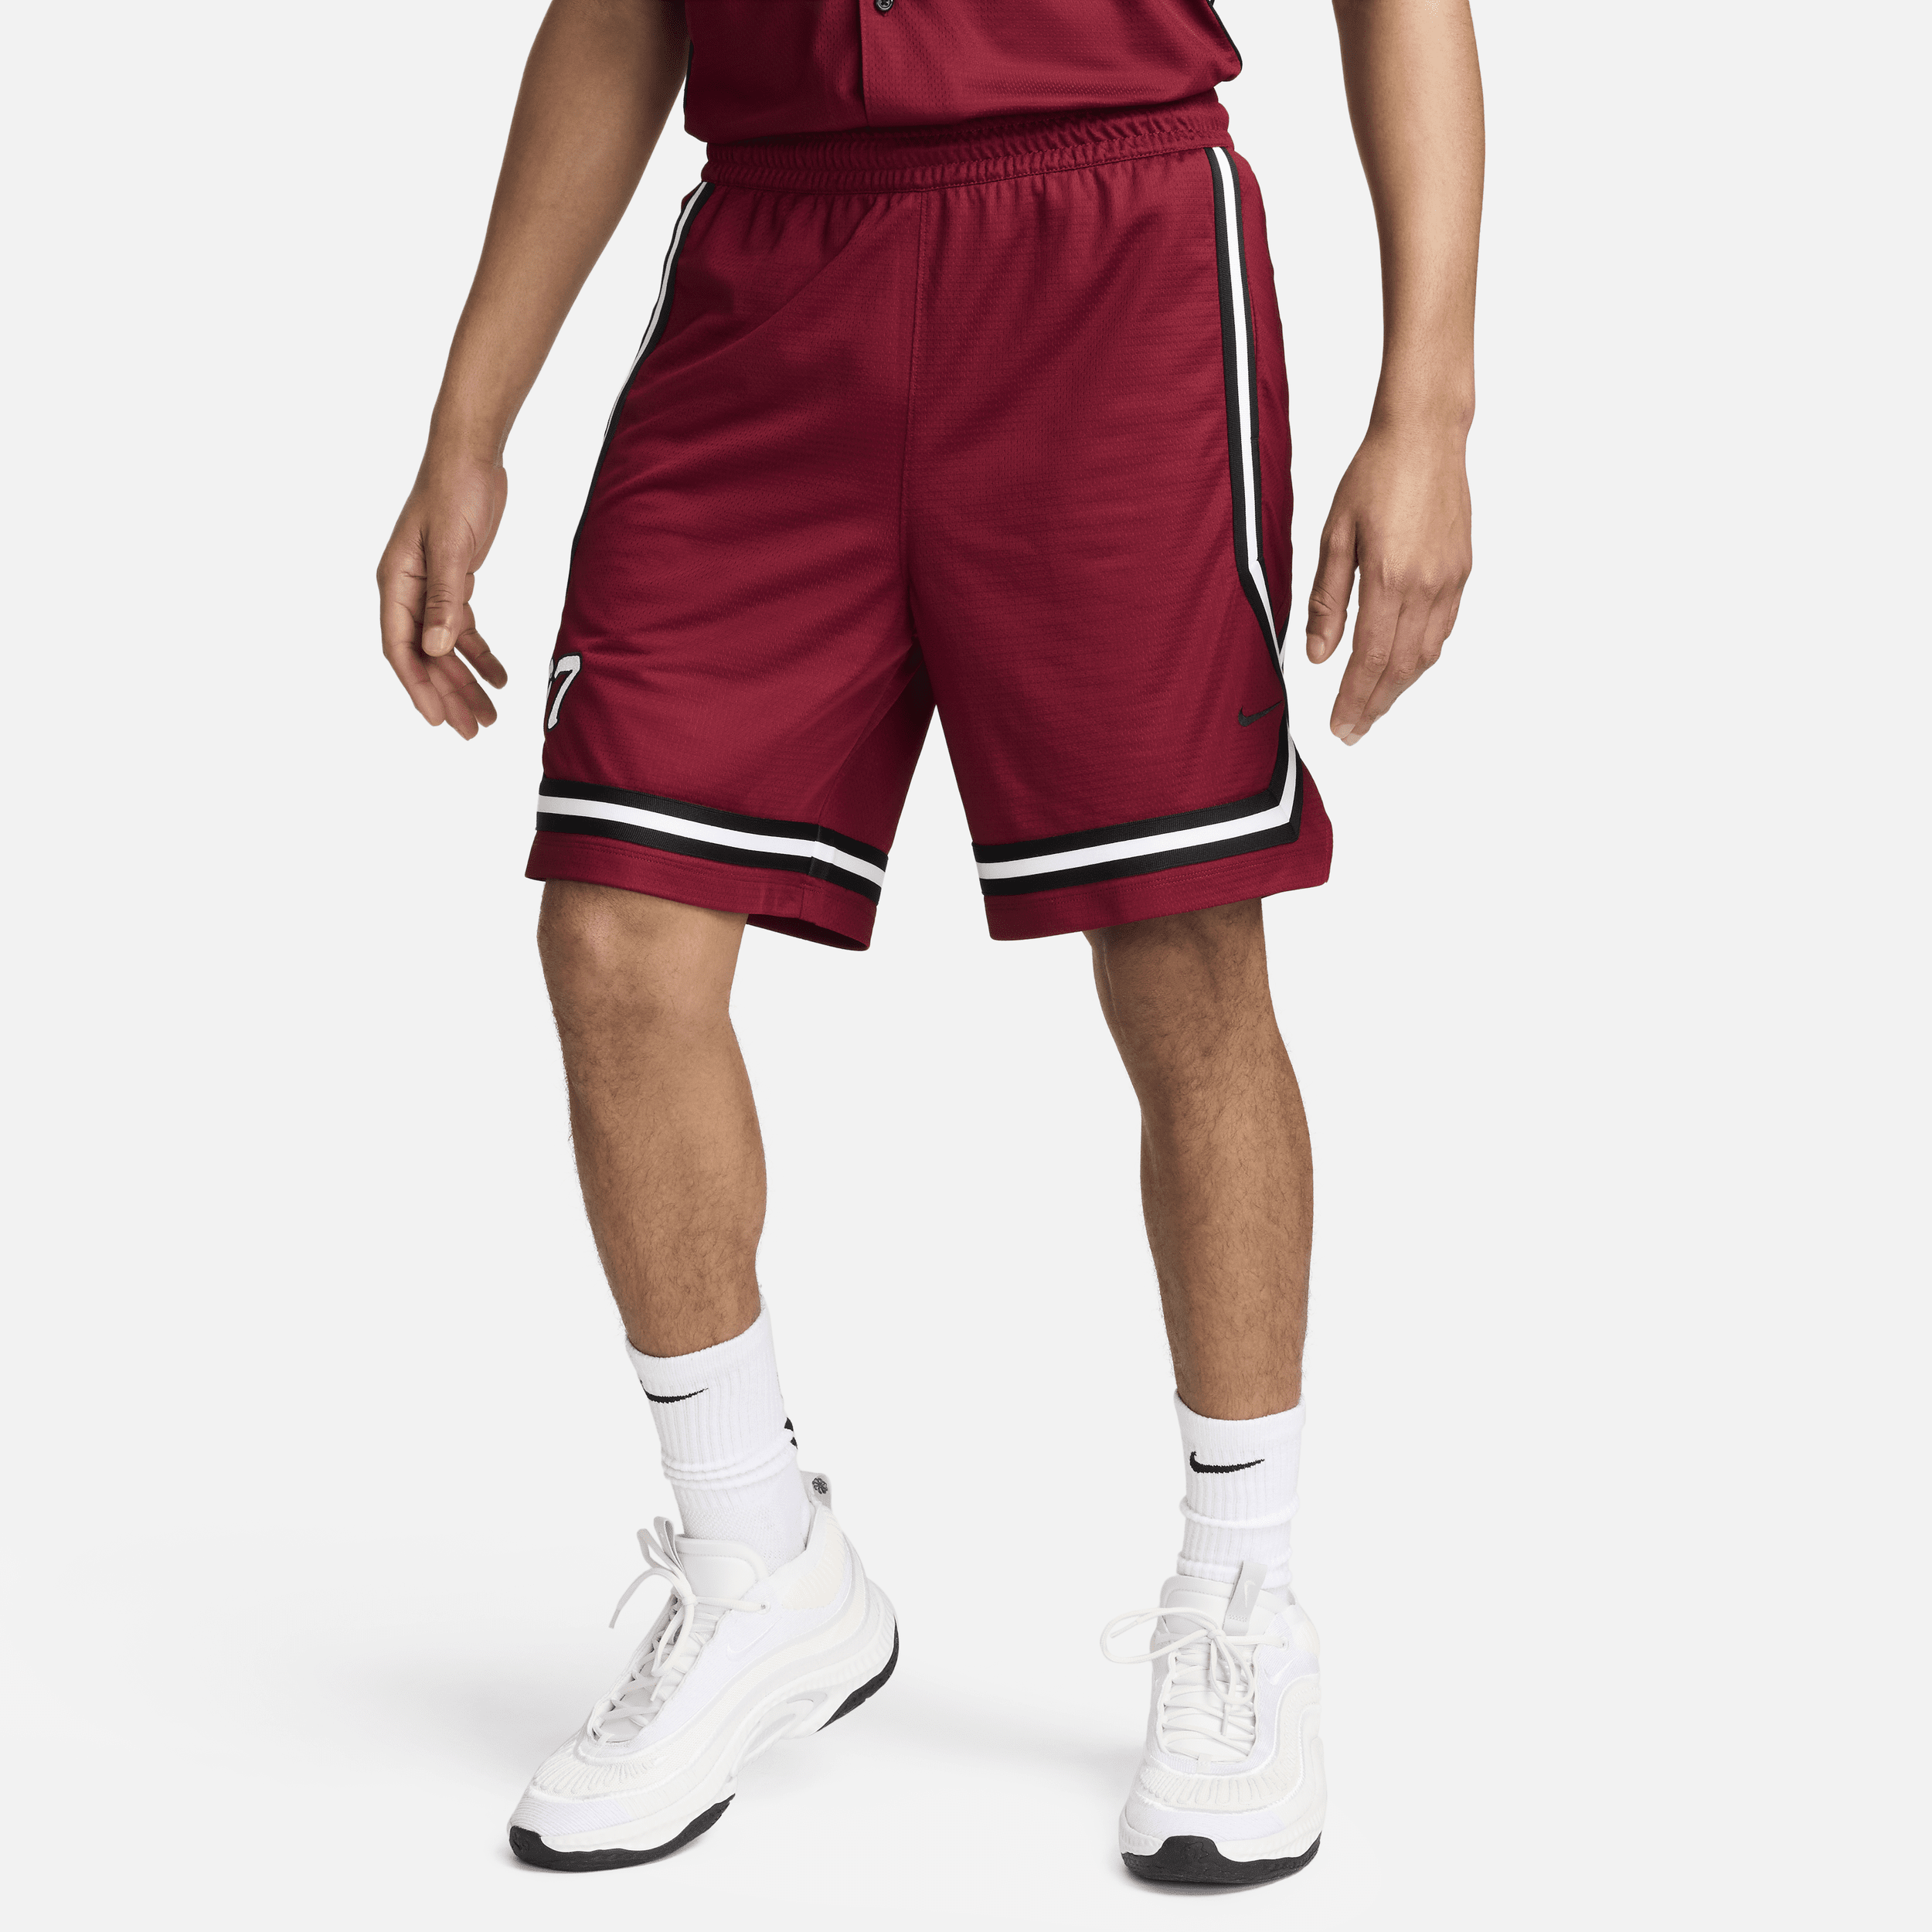 Shorts da basket 20 cm Dri-FIT Nike DNA Crossover – Uomo - Rosso